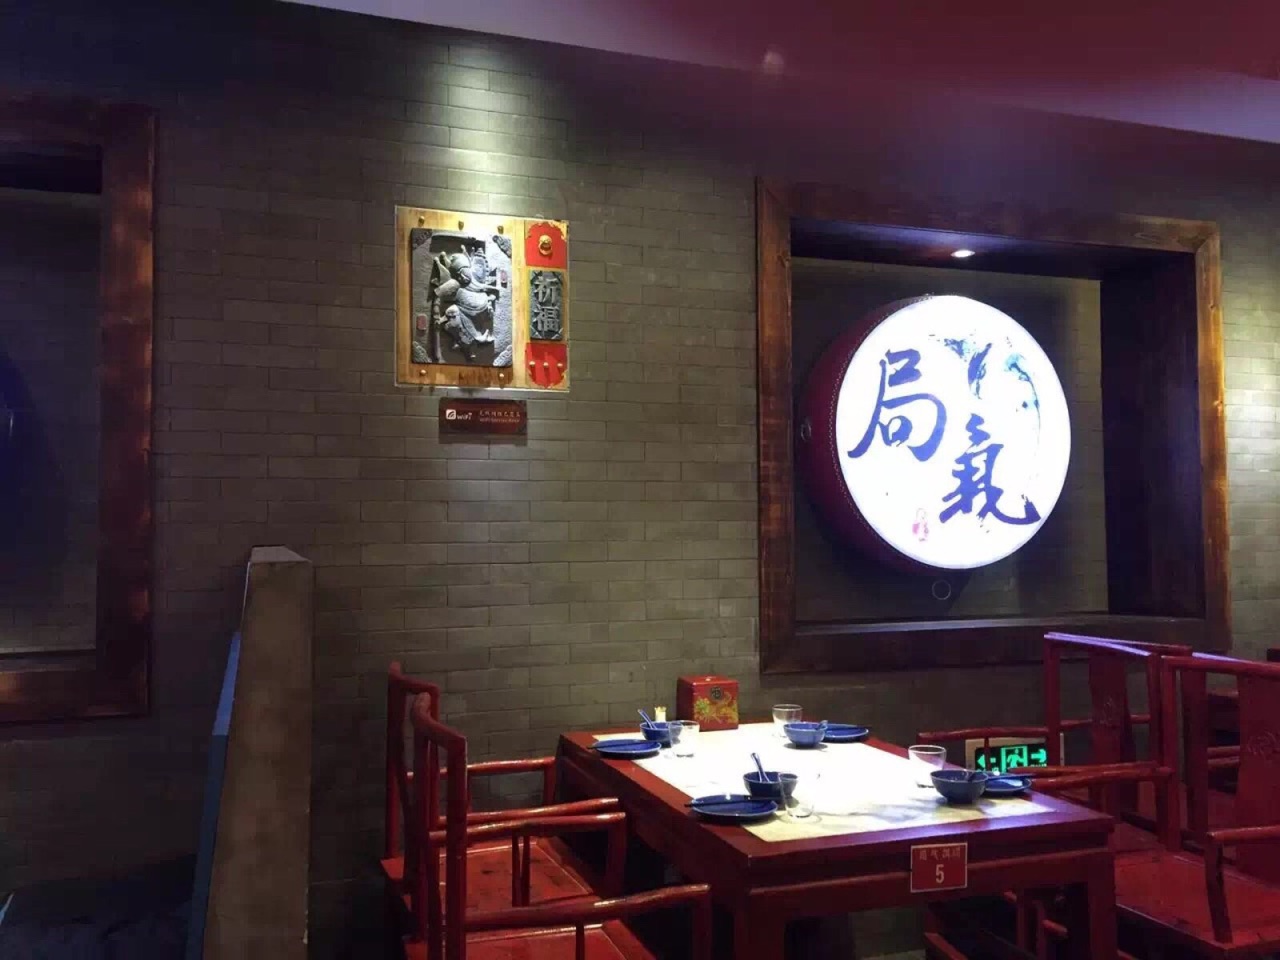 【携程美食林】北京局气(西单店)餐馆,第一次听到这个餐厅,并不是听到